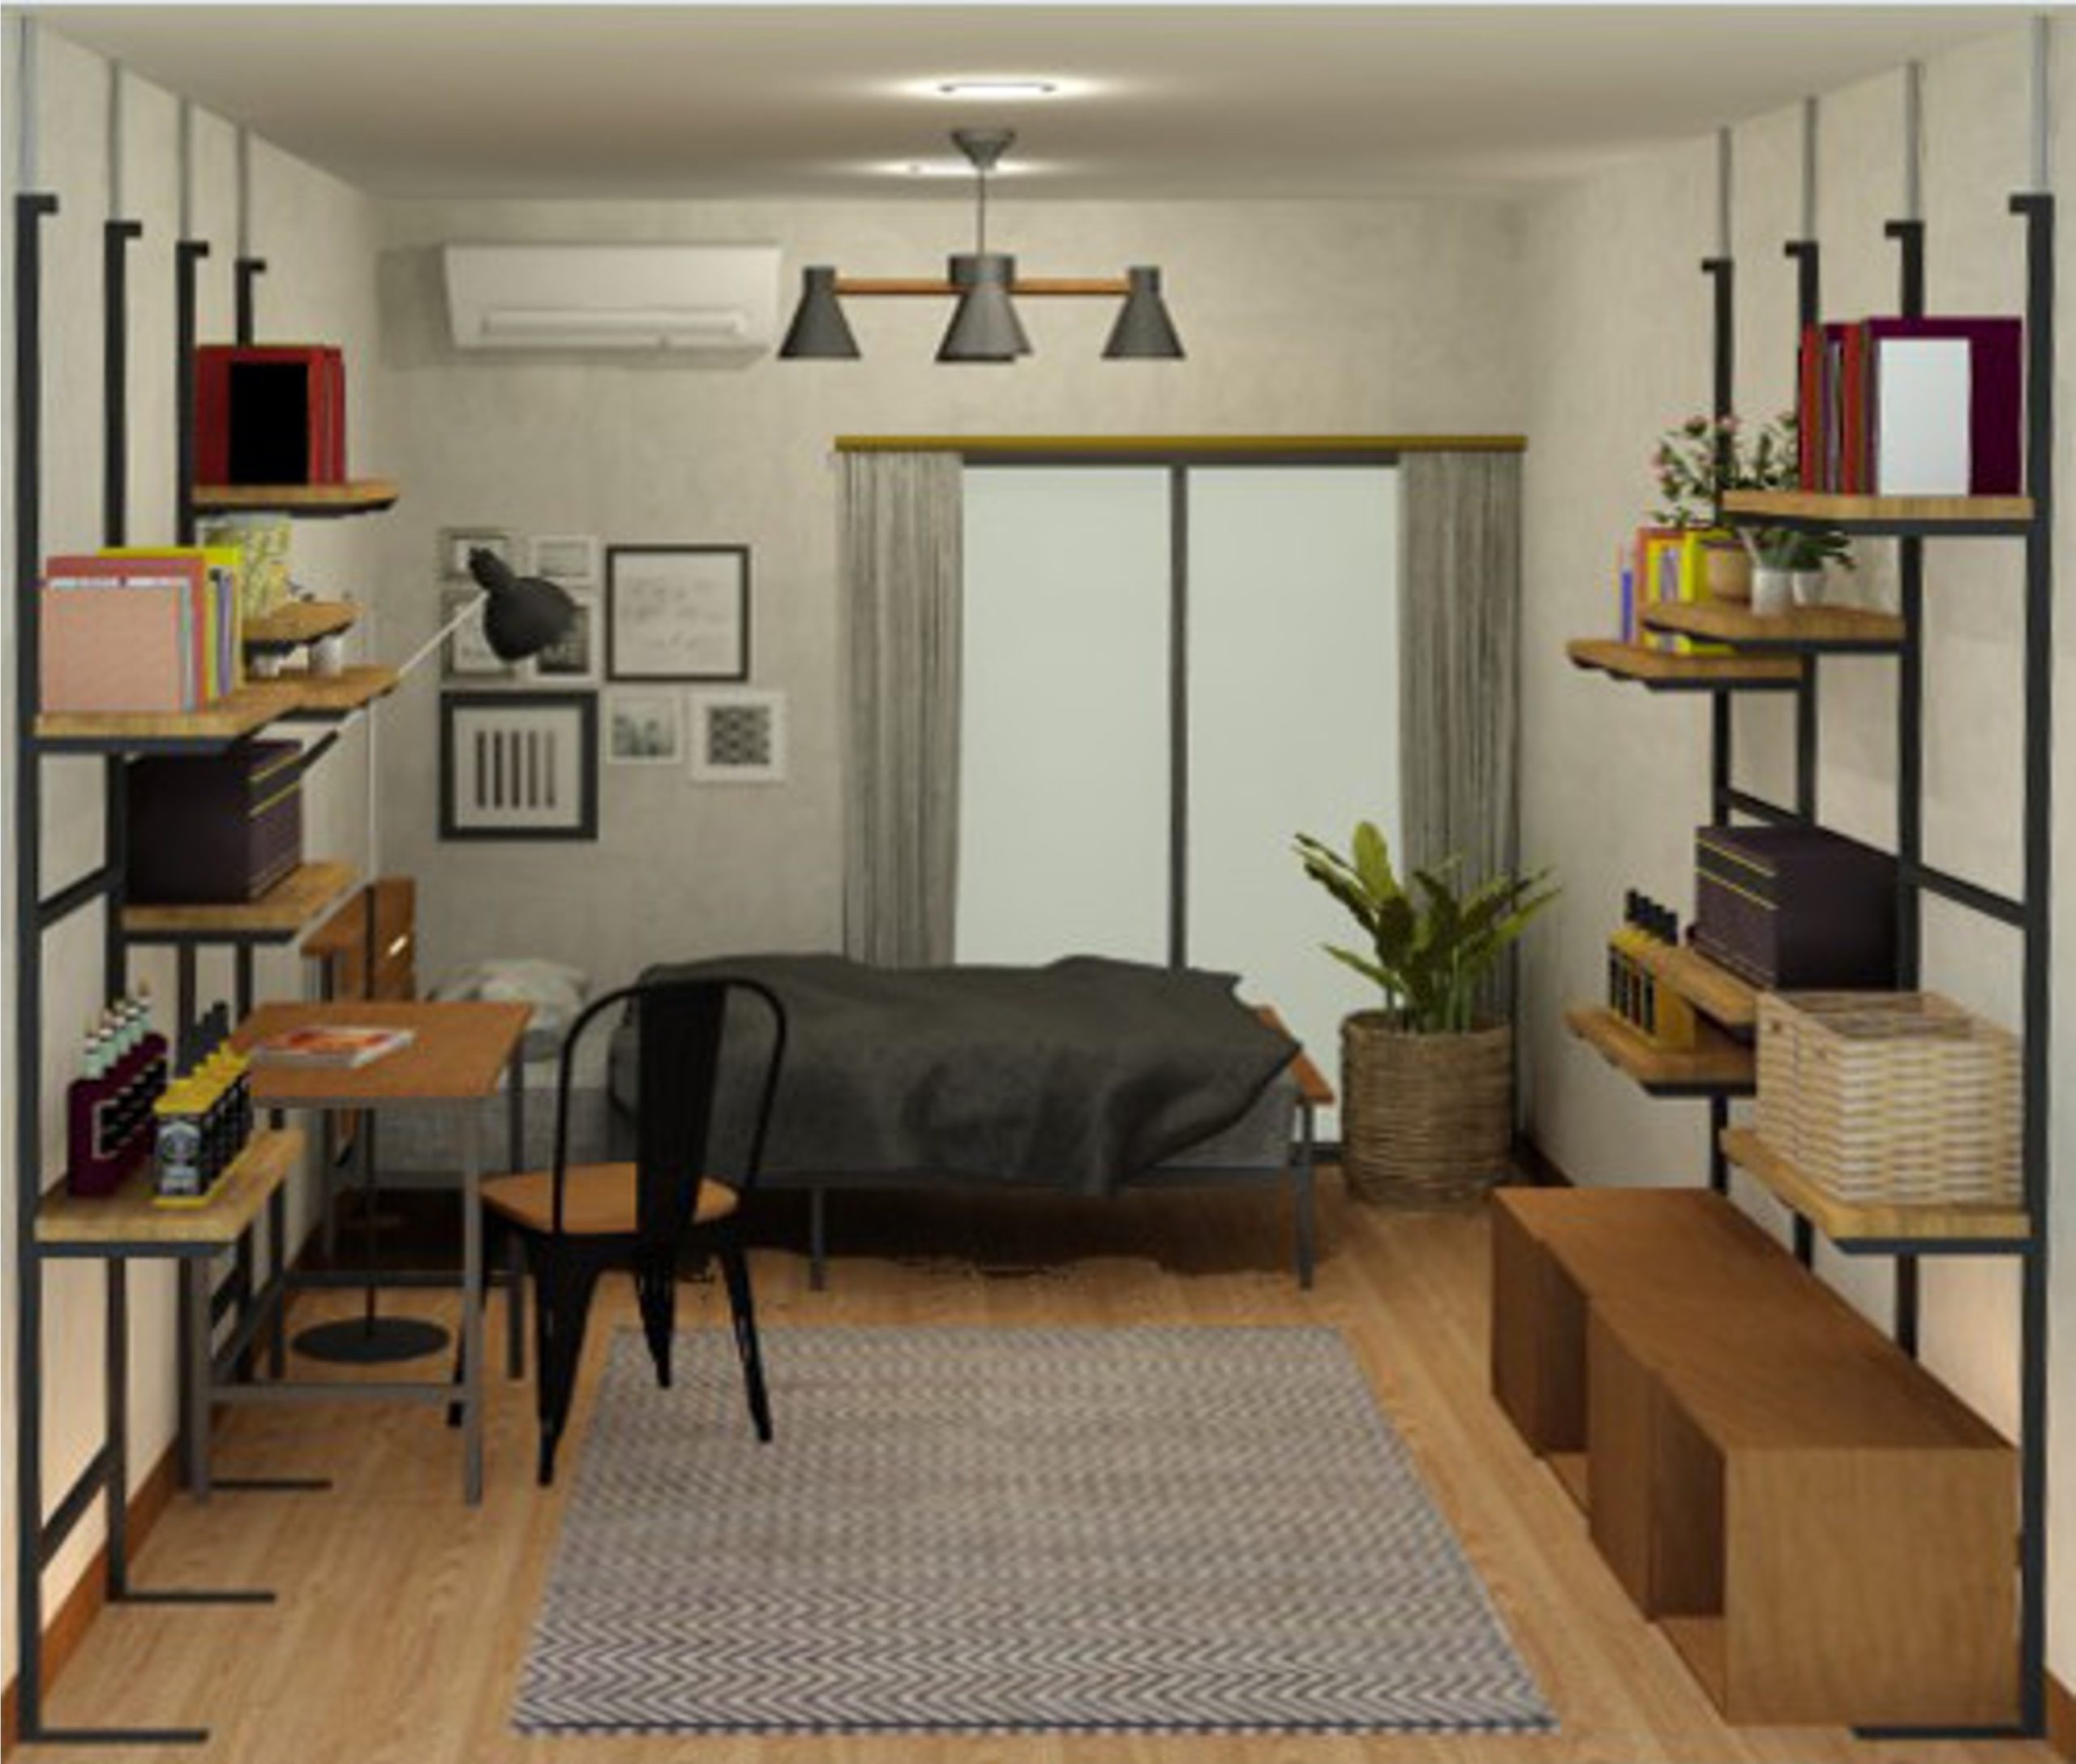 ６畳１人暮らし ヴィンテージスタイルの部屋 収納重視スタイル Roomtrip ルームトリップ